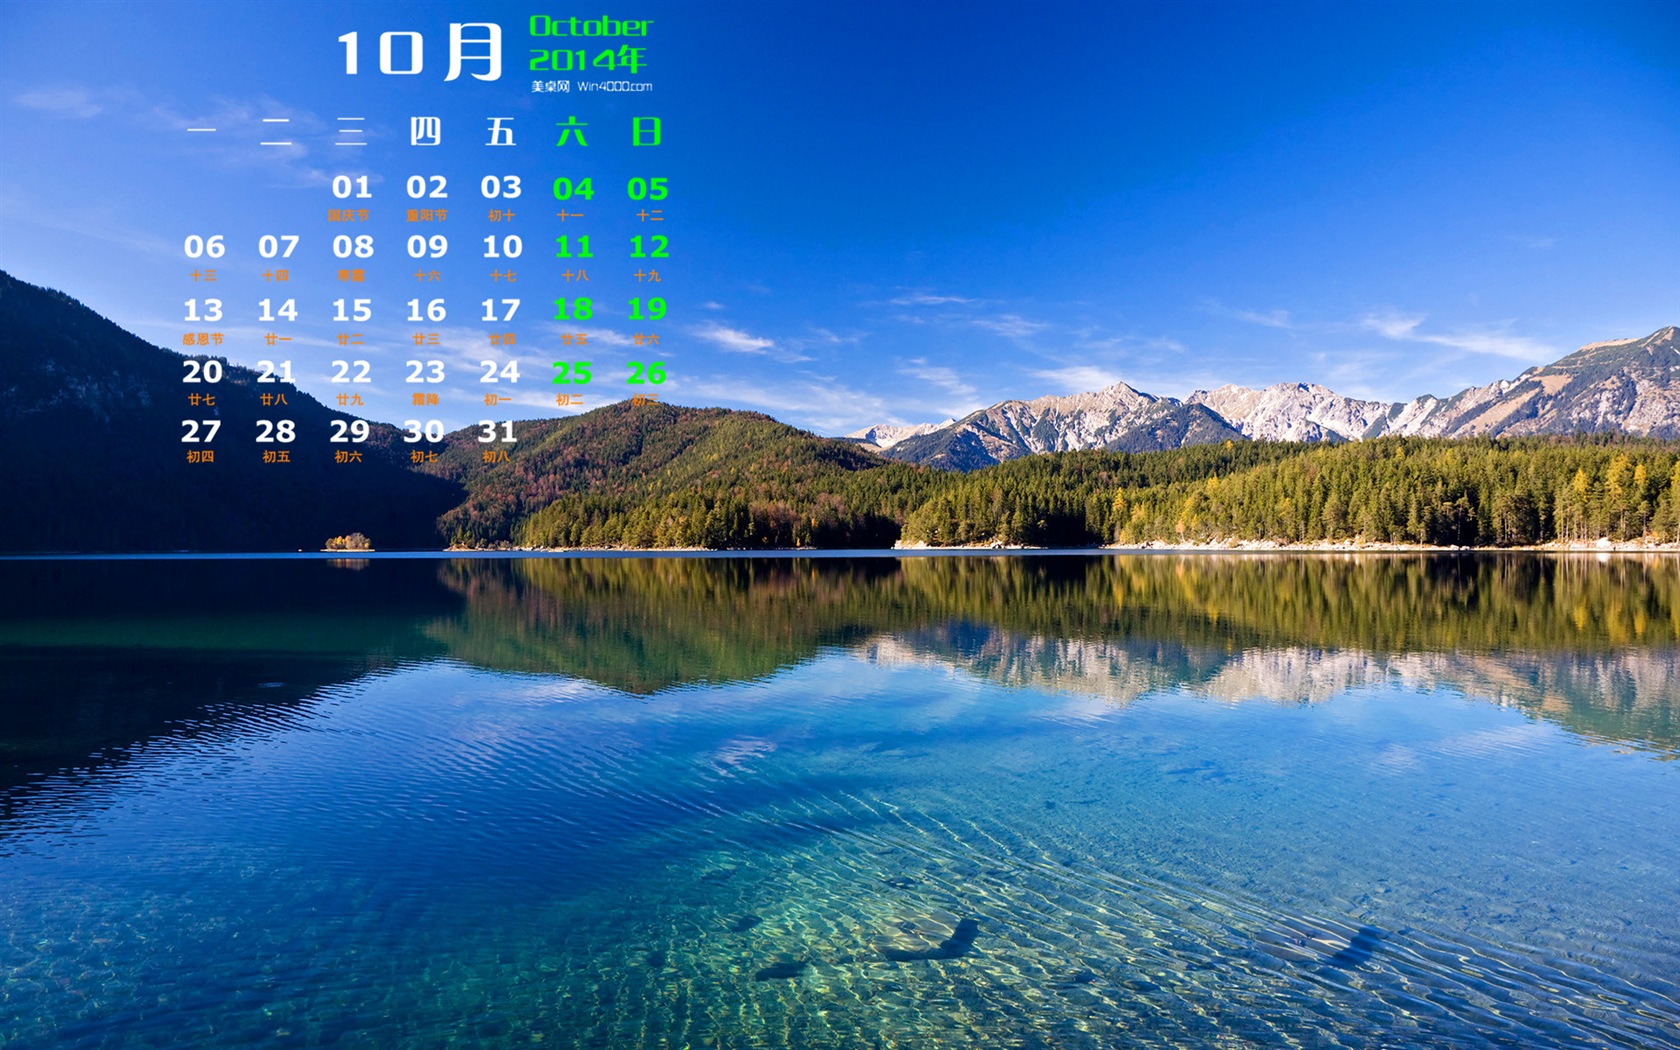 10 2014 wallpaper Calendario (1) #6 - 1680x1050